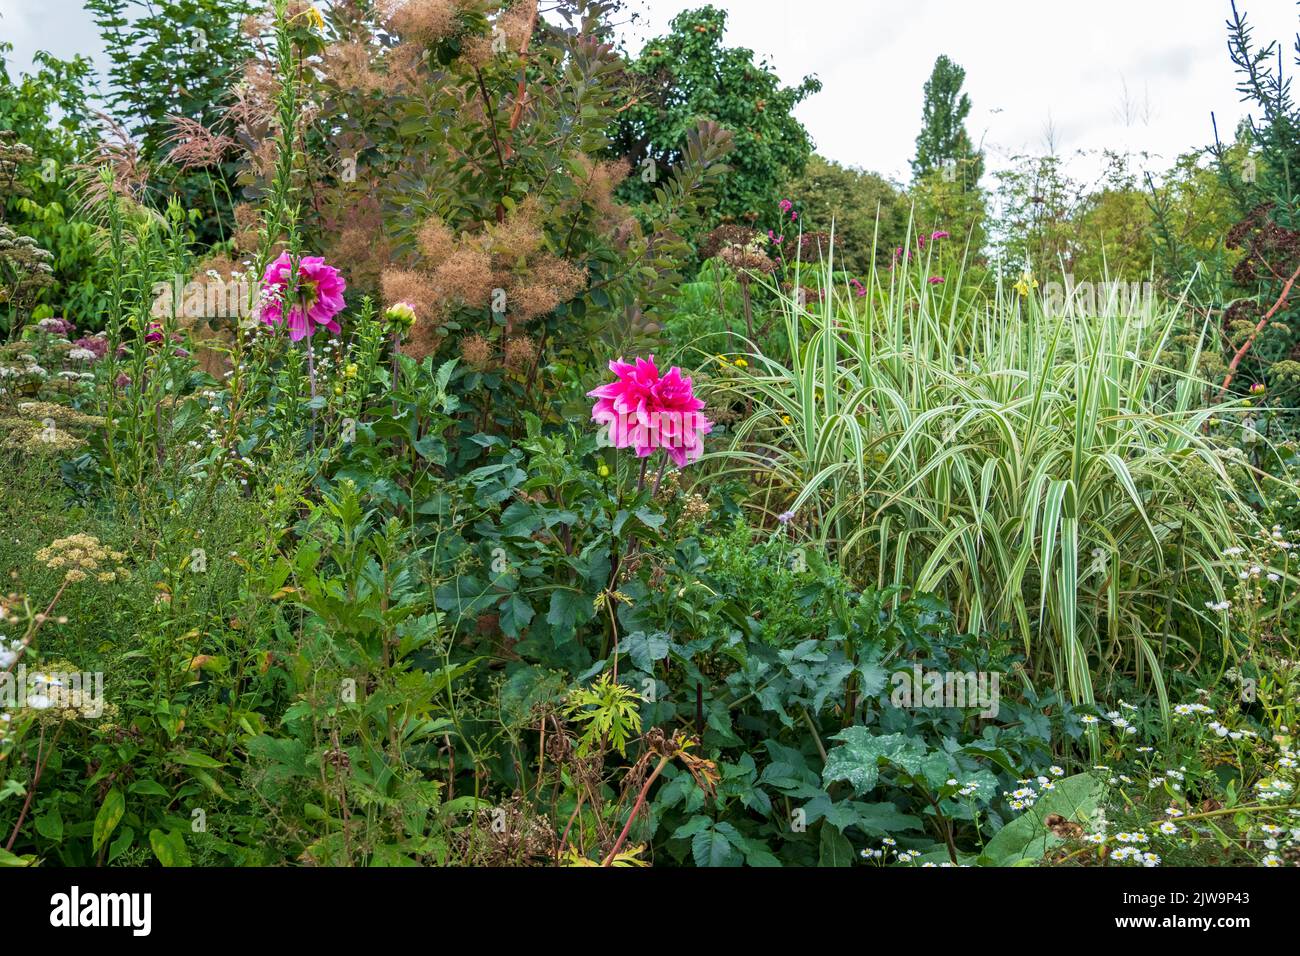 Dahlia at Great Dixter garden, East Sussex, UK Stock Photo